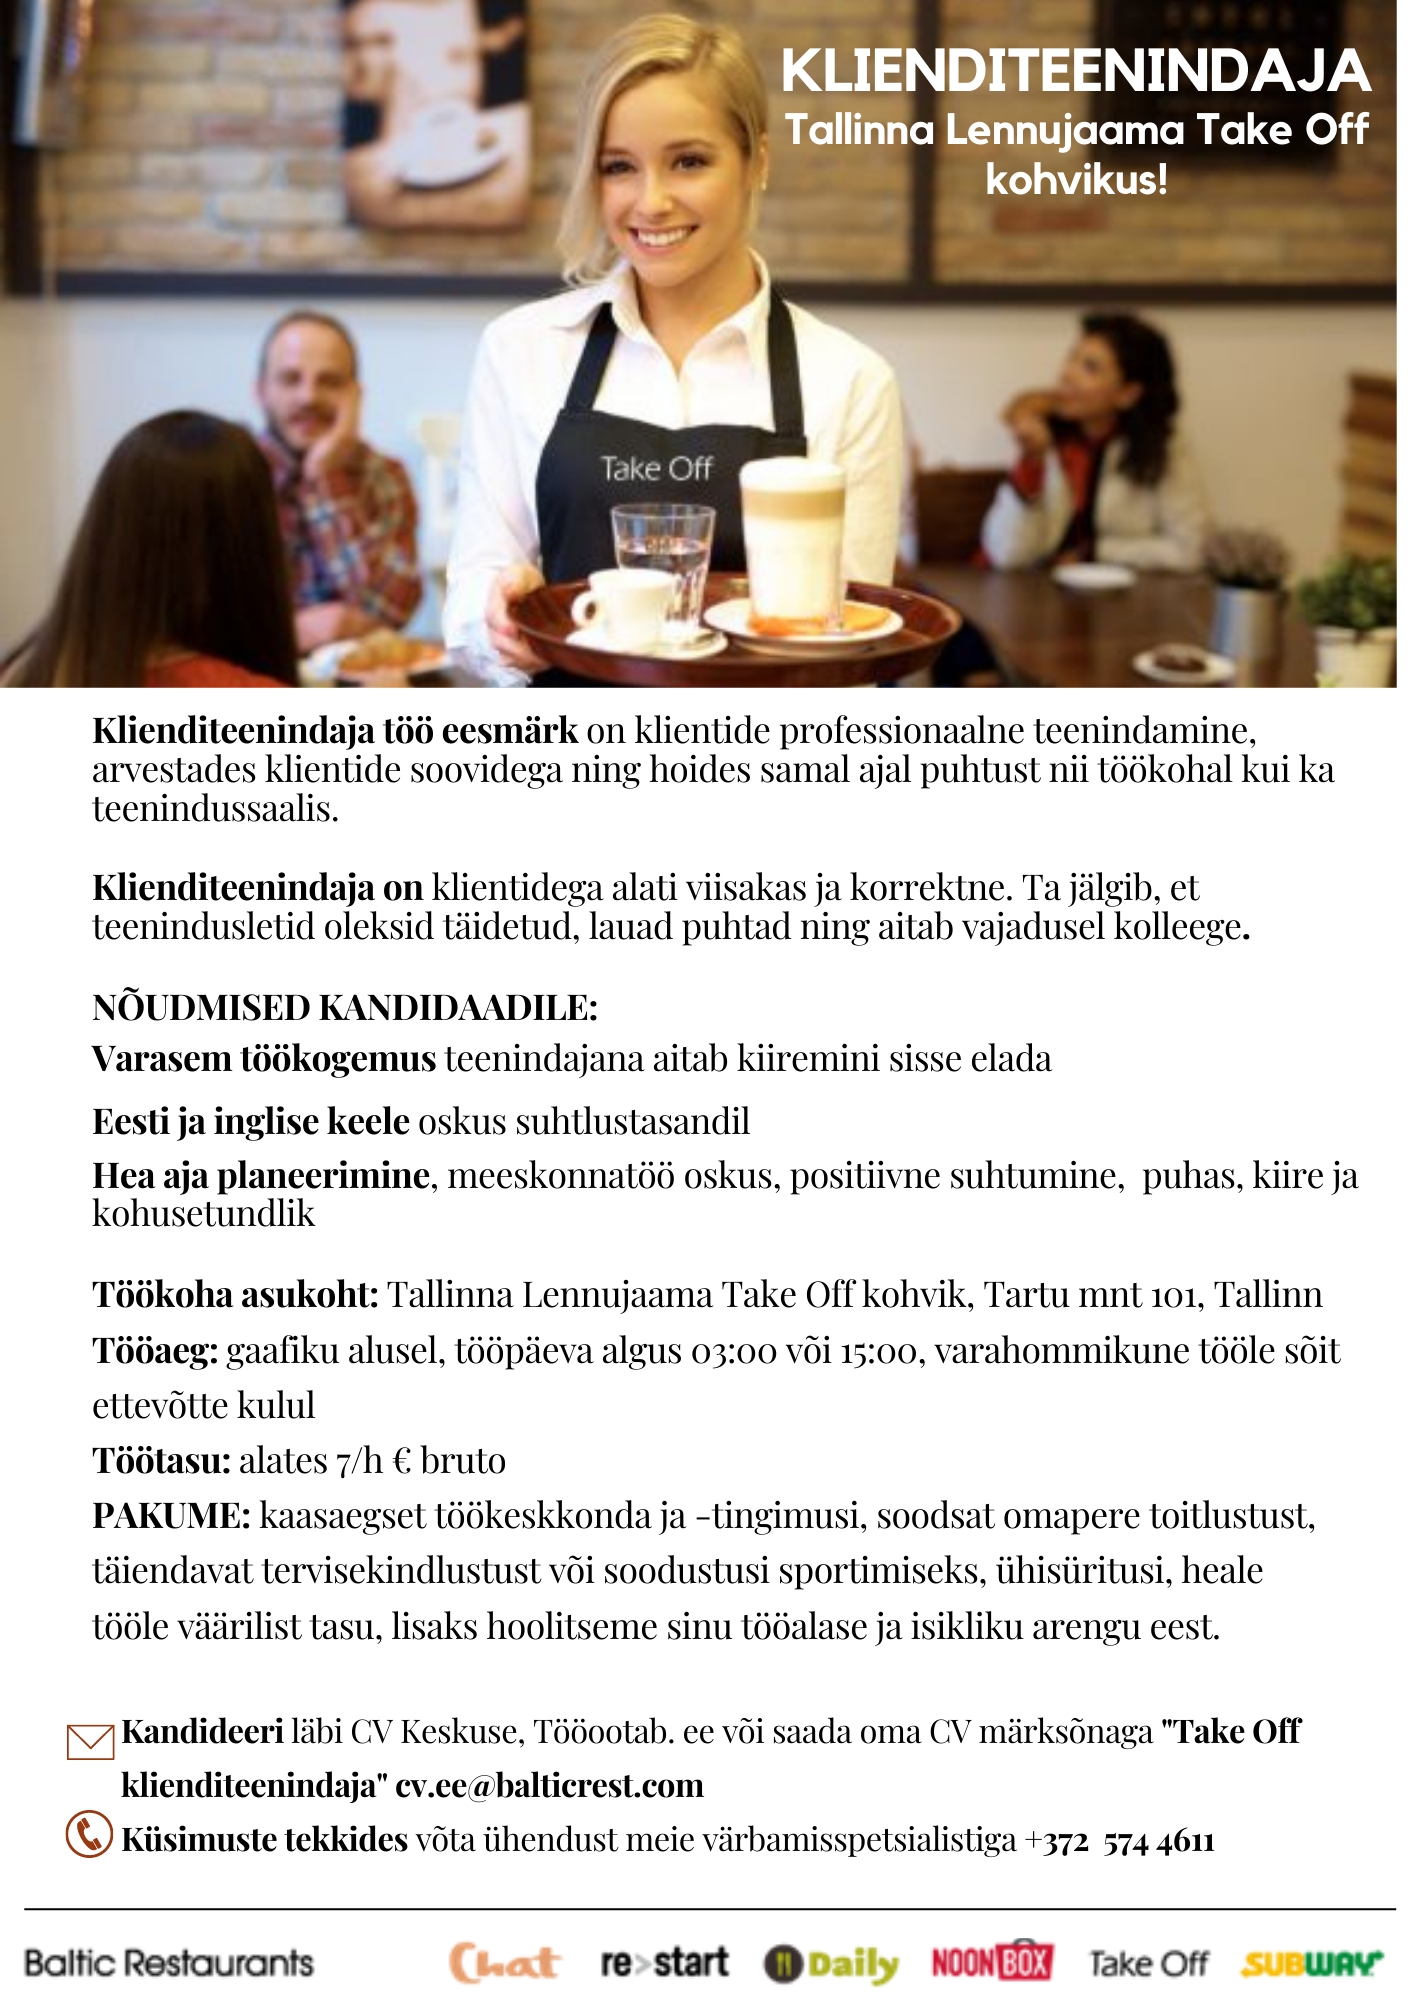 Baltic Restaurants KLIENDITEENINDAJA LENNUJAAMA TAKE OFF KOHVIKUSSE!